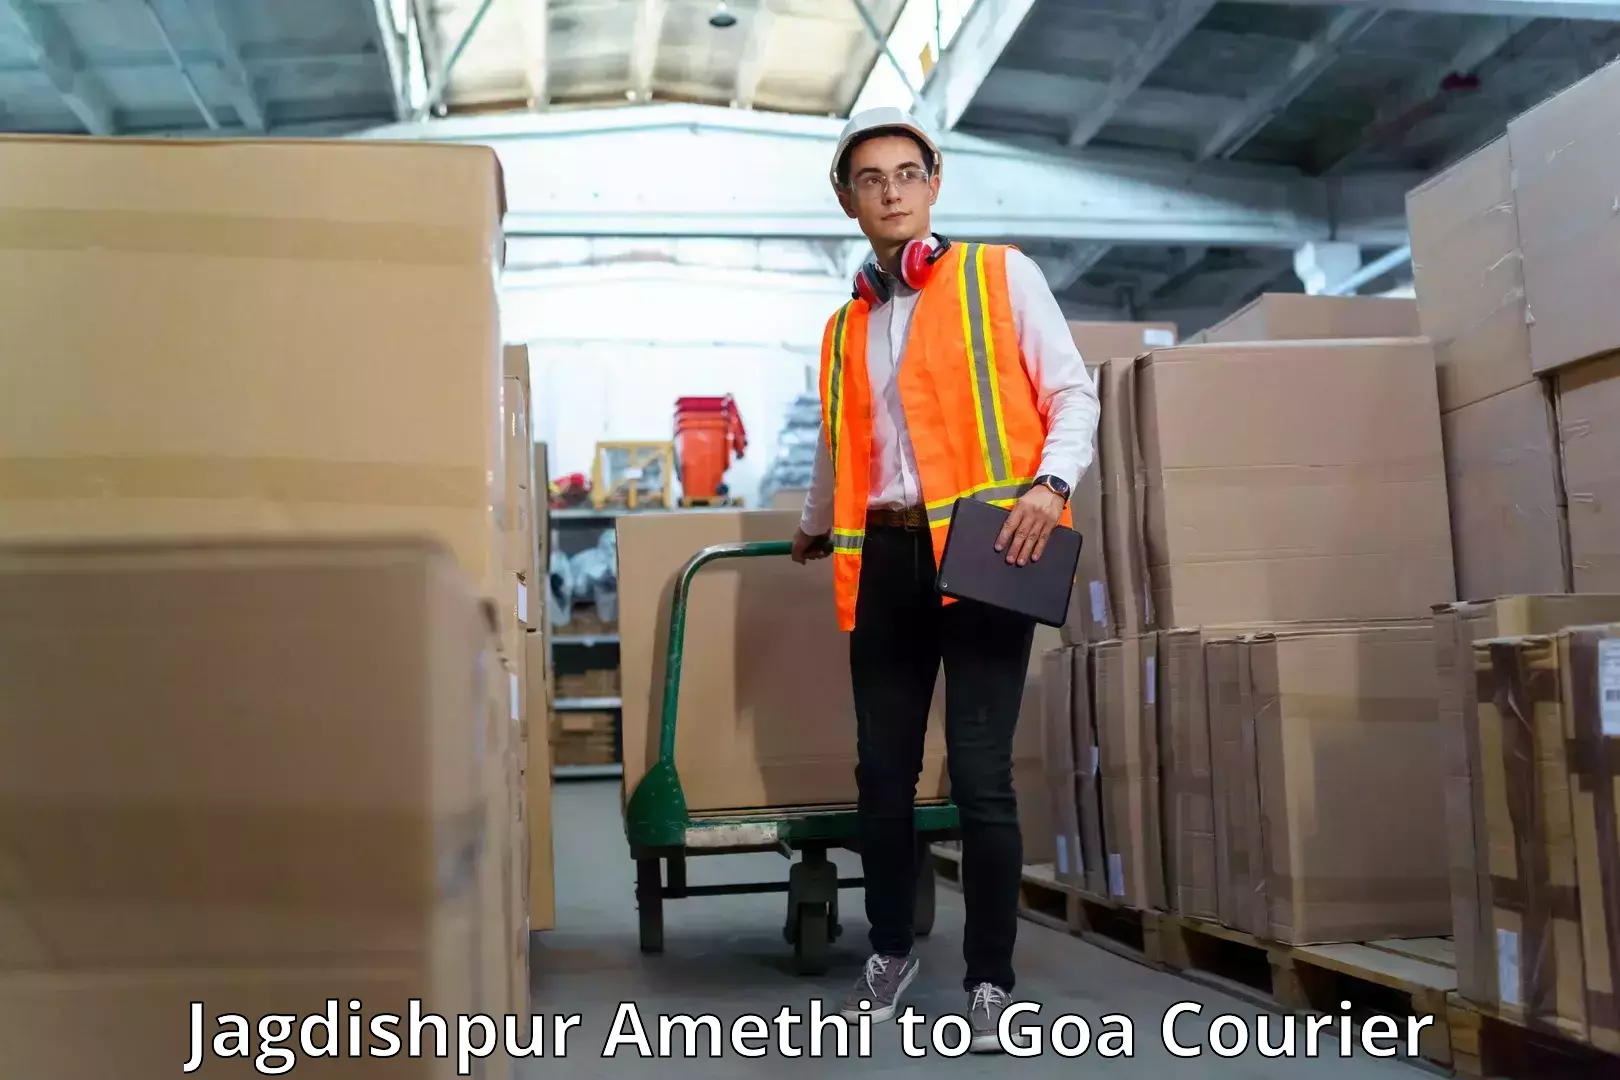 Nationwide delivery network Jagdishpur Amethi to Goa University